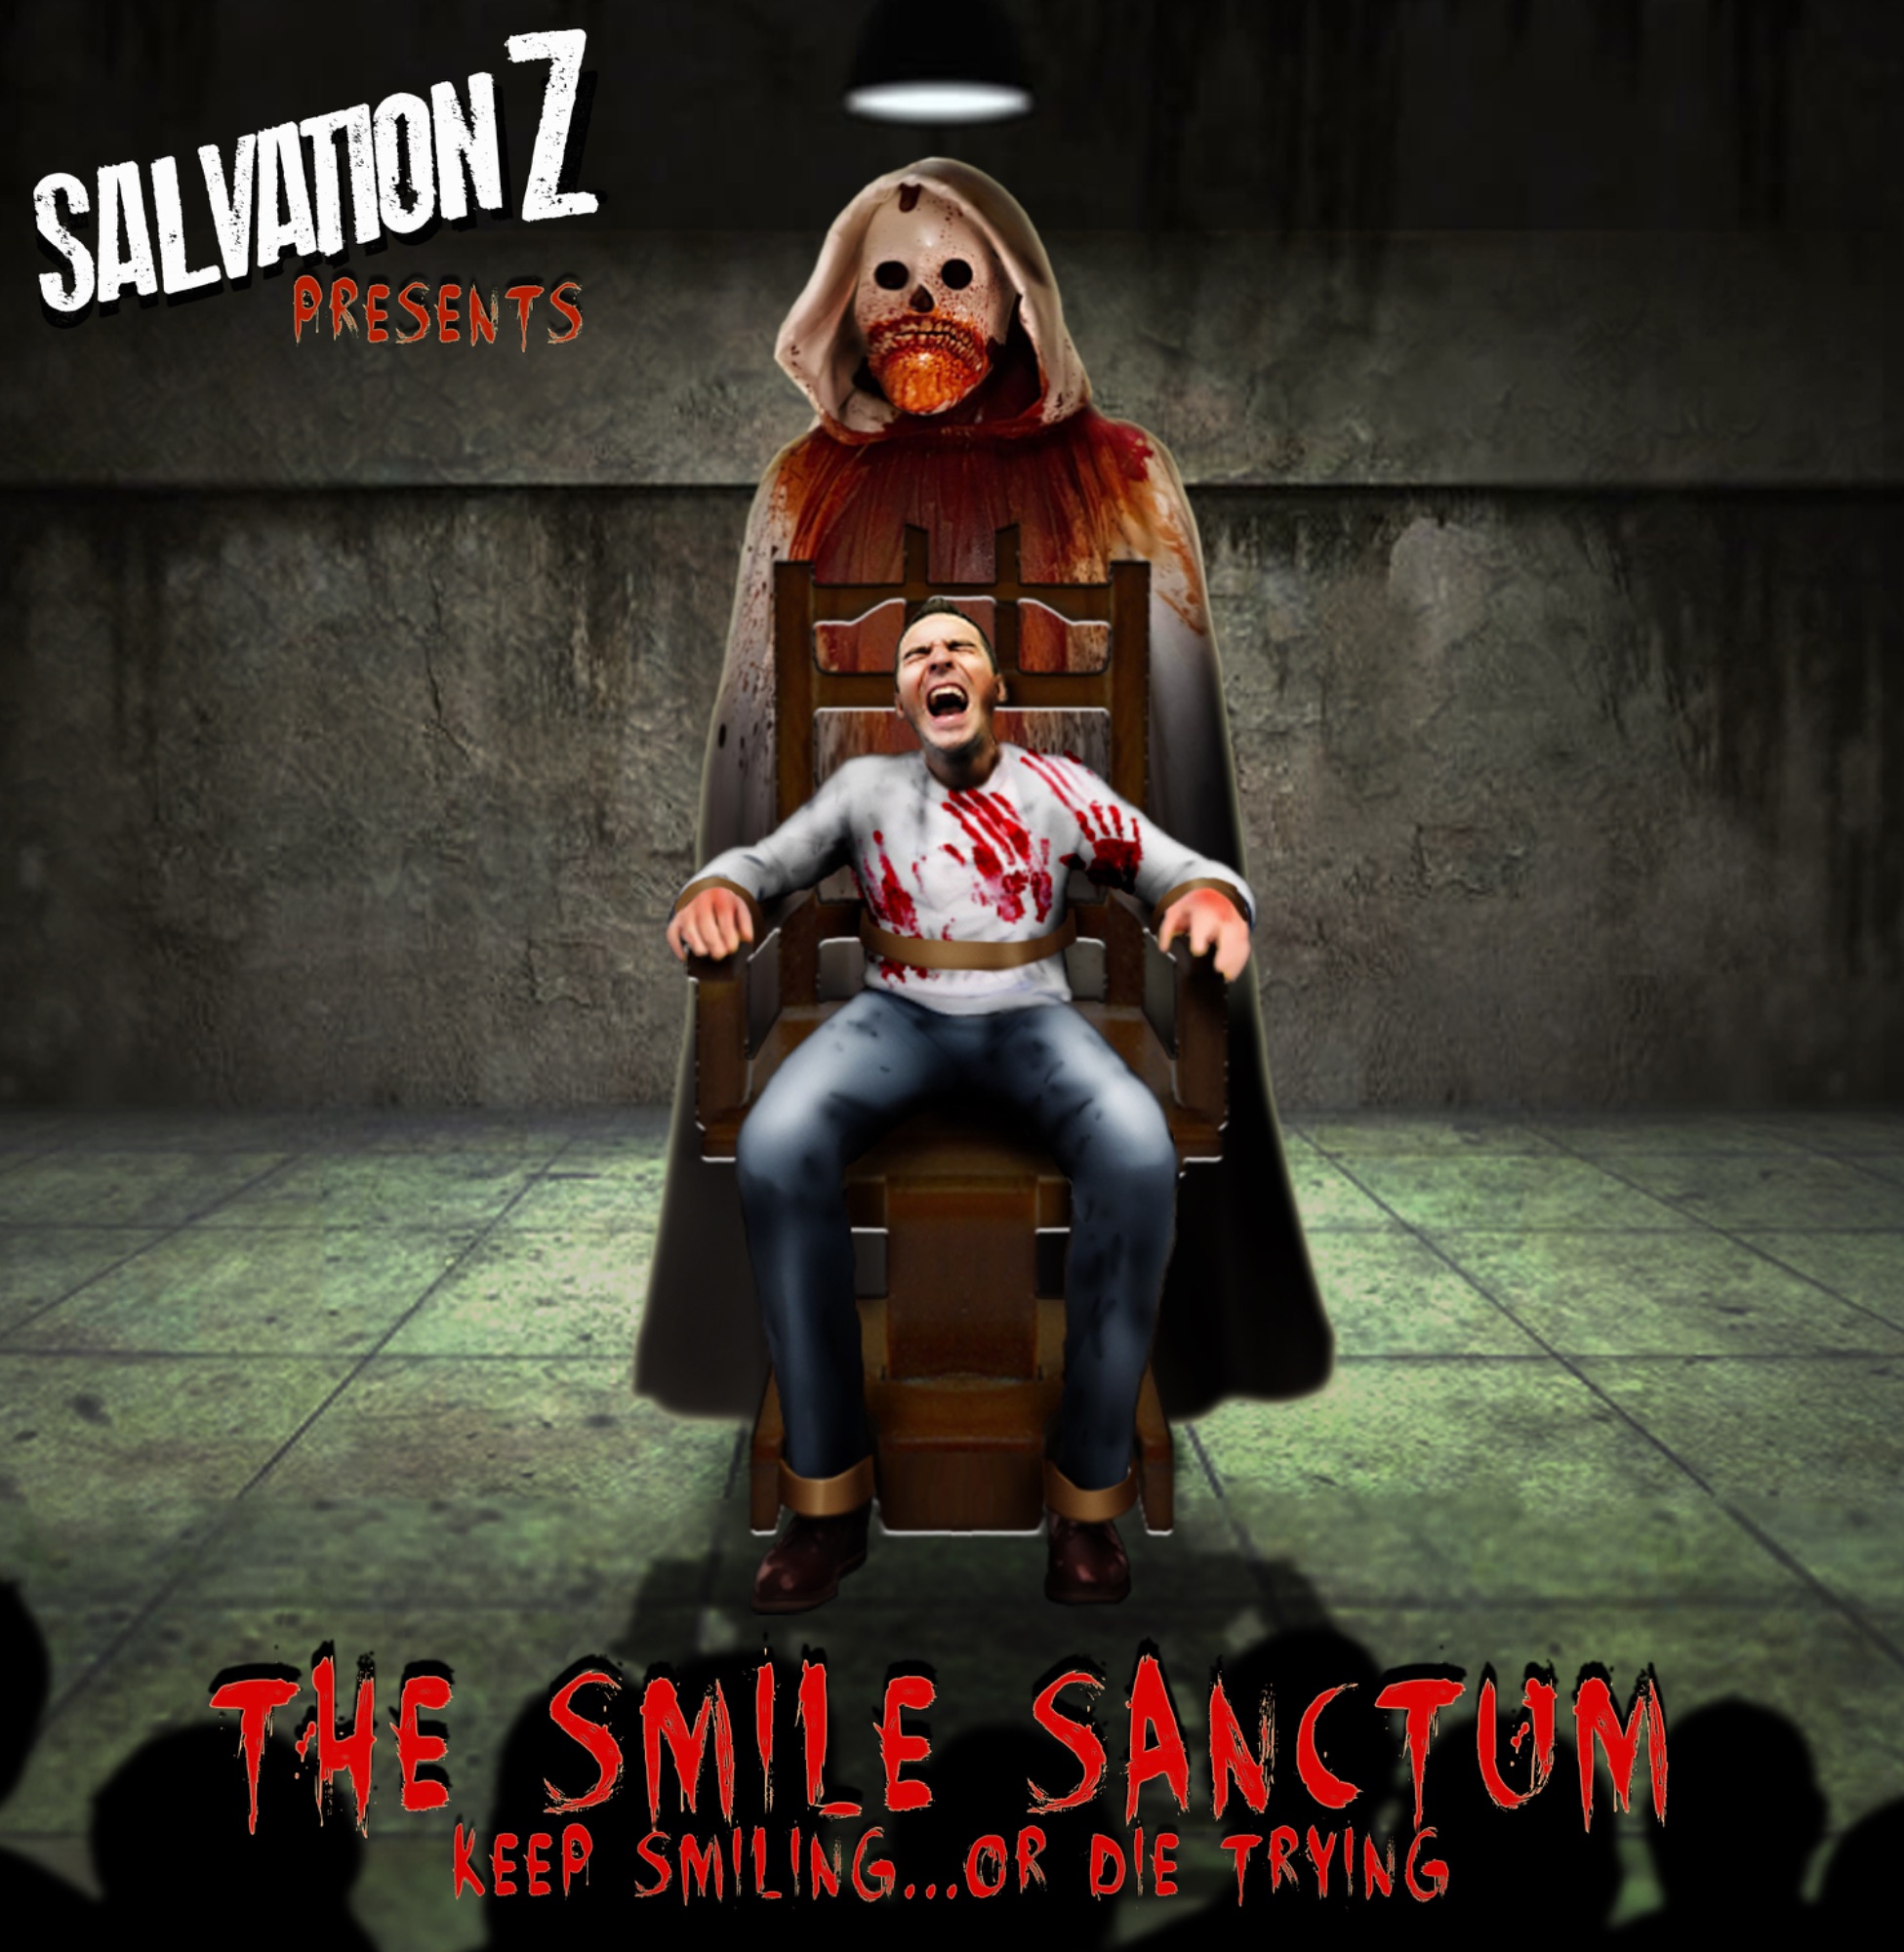 The Smile Sanctum